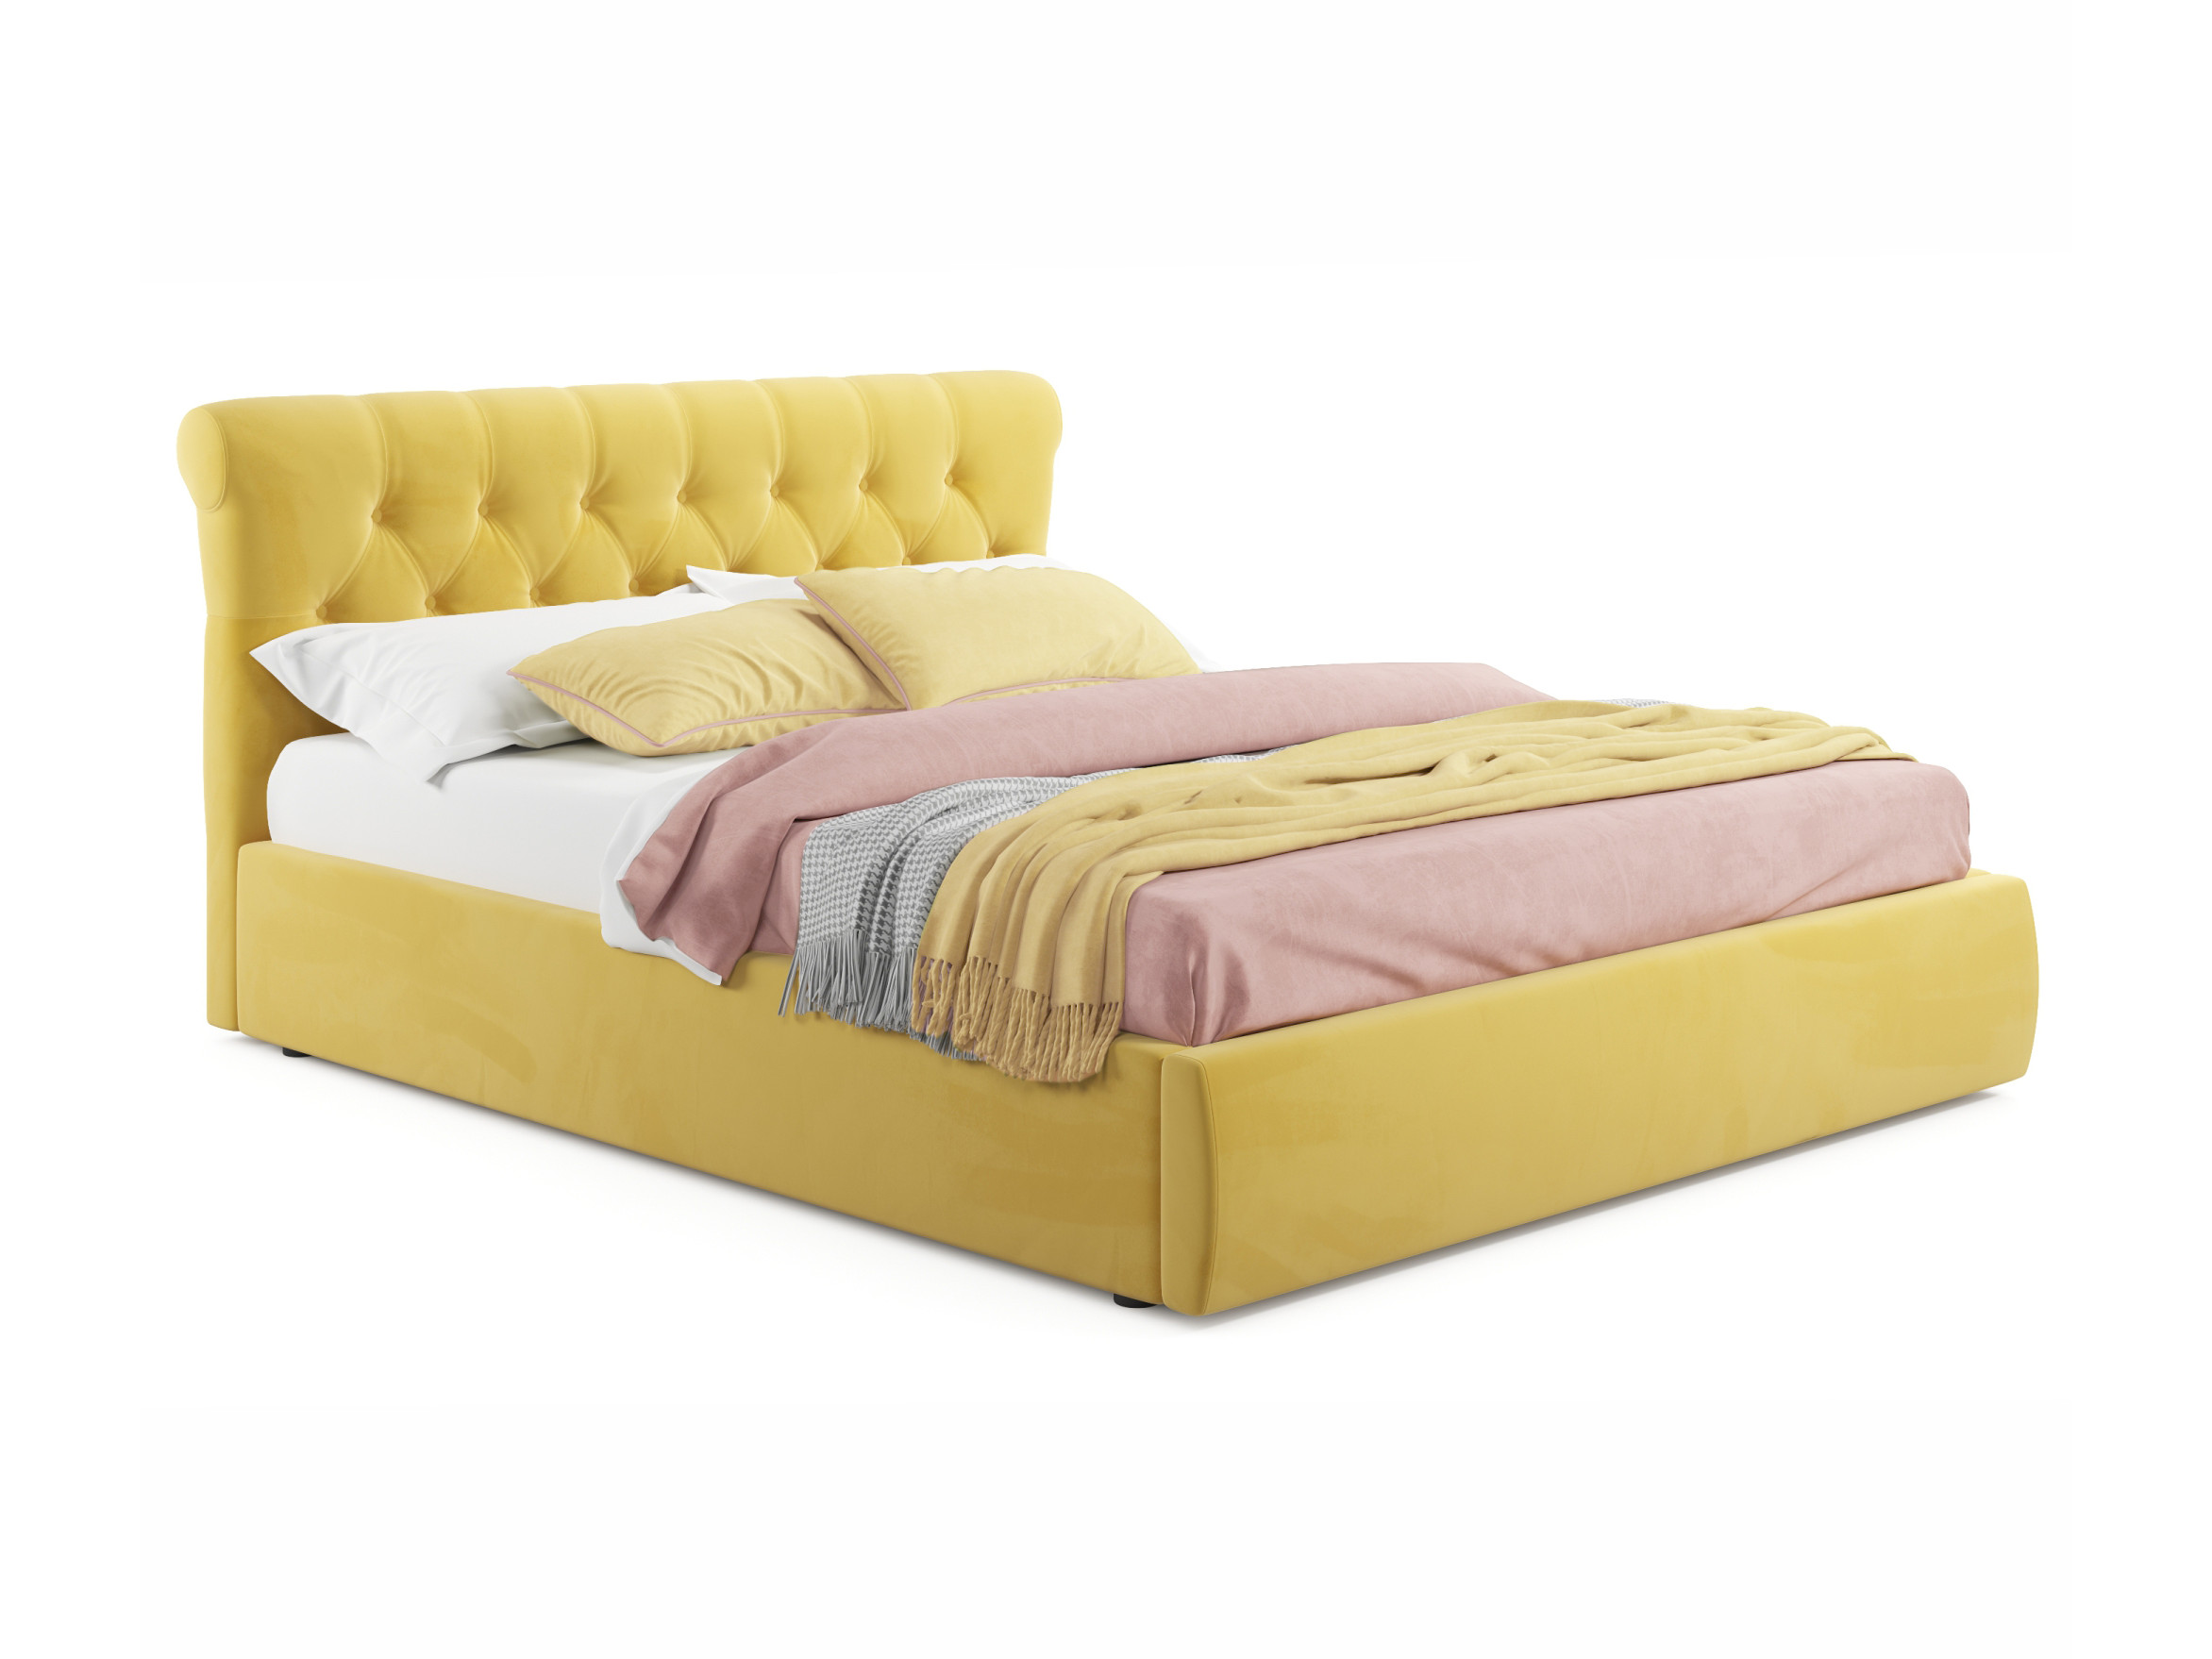 Мягкая кровать Ameli 1800 желтая с ортопедическим основанием желтый, Желтый, Велюр, ДСП